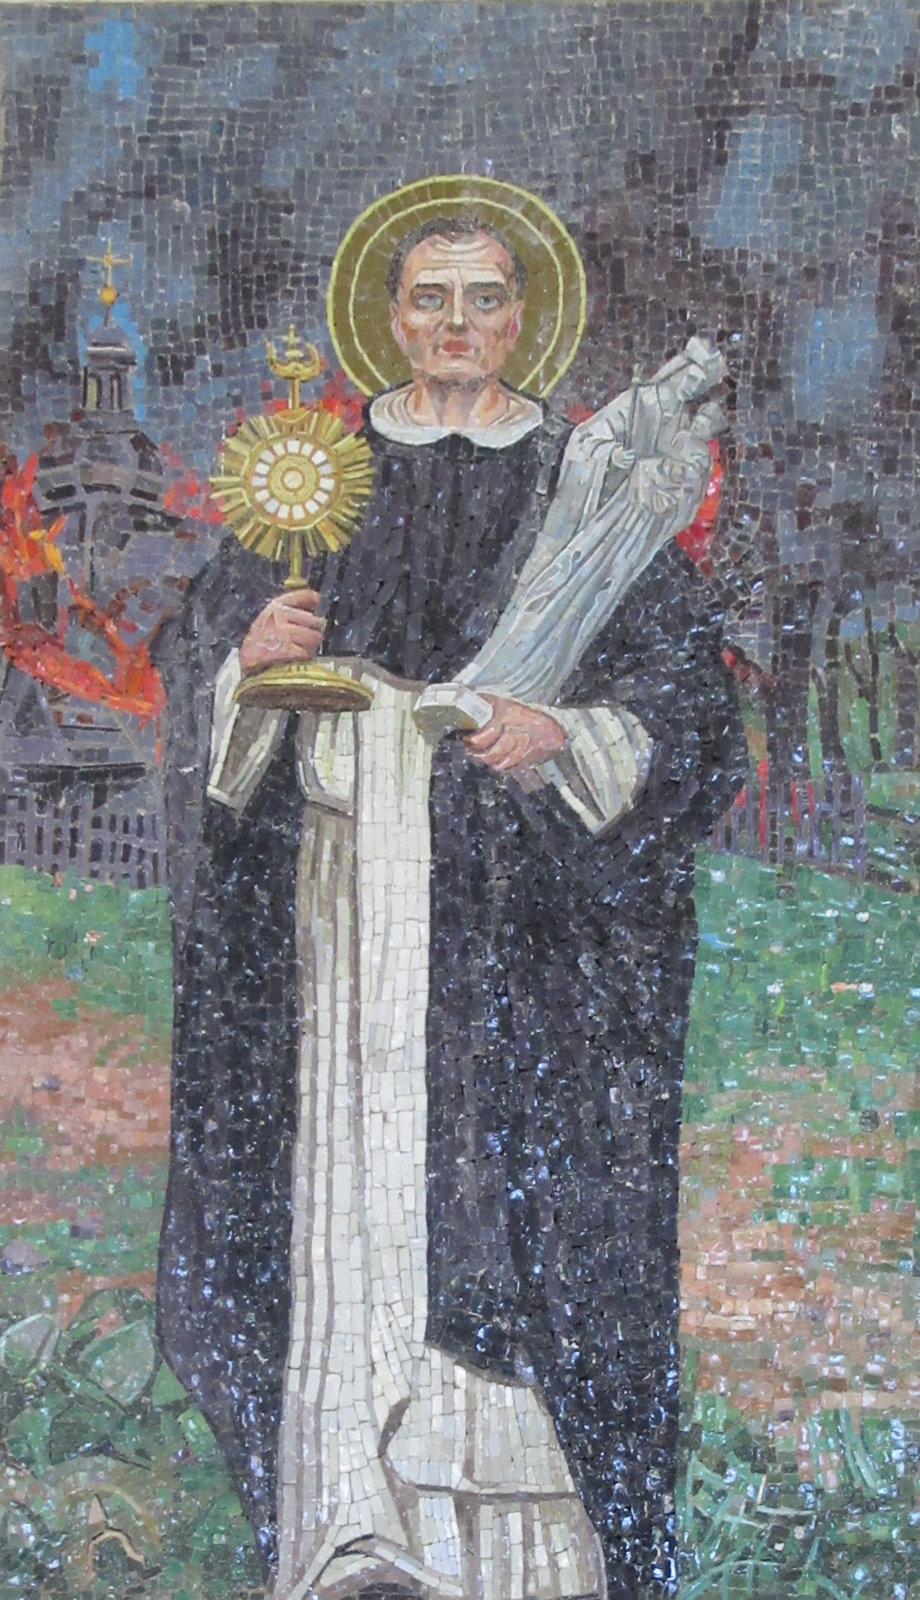 Mosaik, 2007, an der Kirche Santa Sabina in Rom